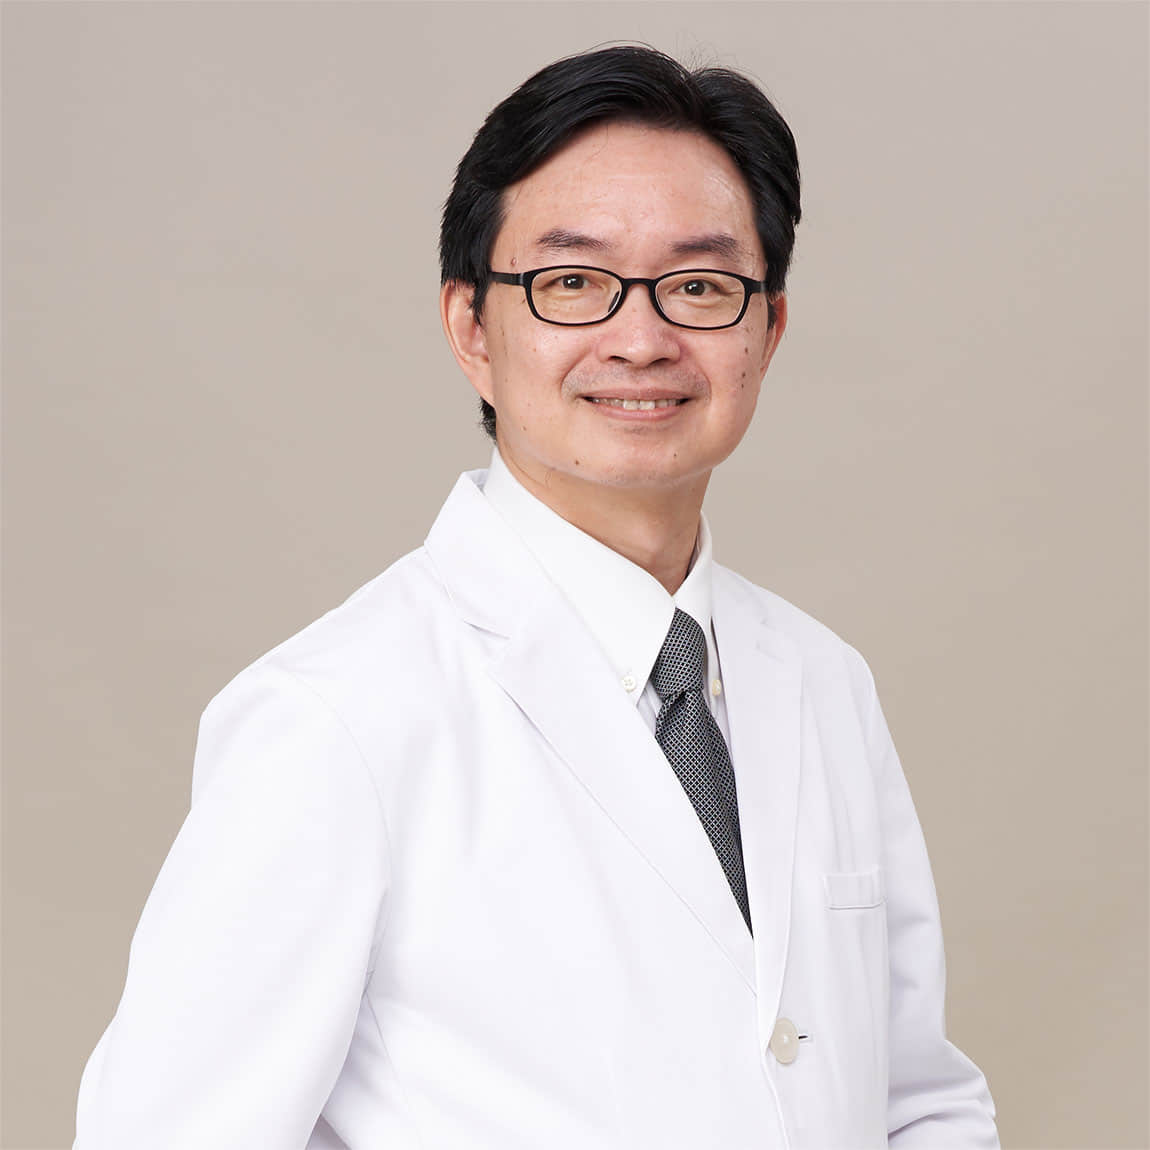 何彦秉 Jason Yen-Ping Ho, MD., 副院长.